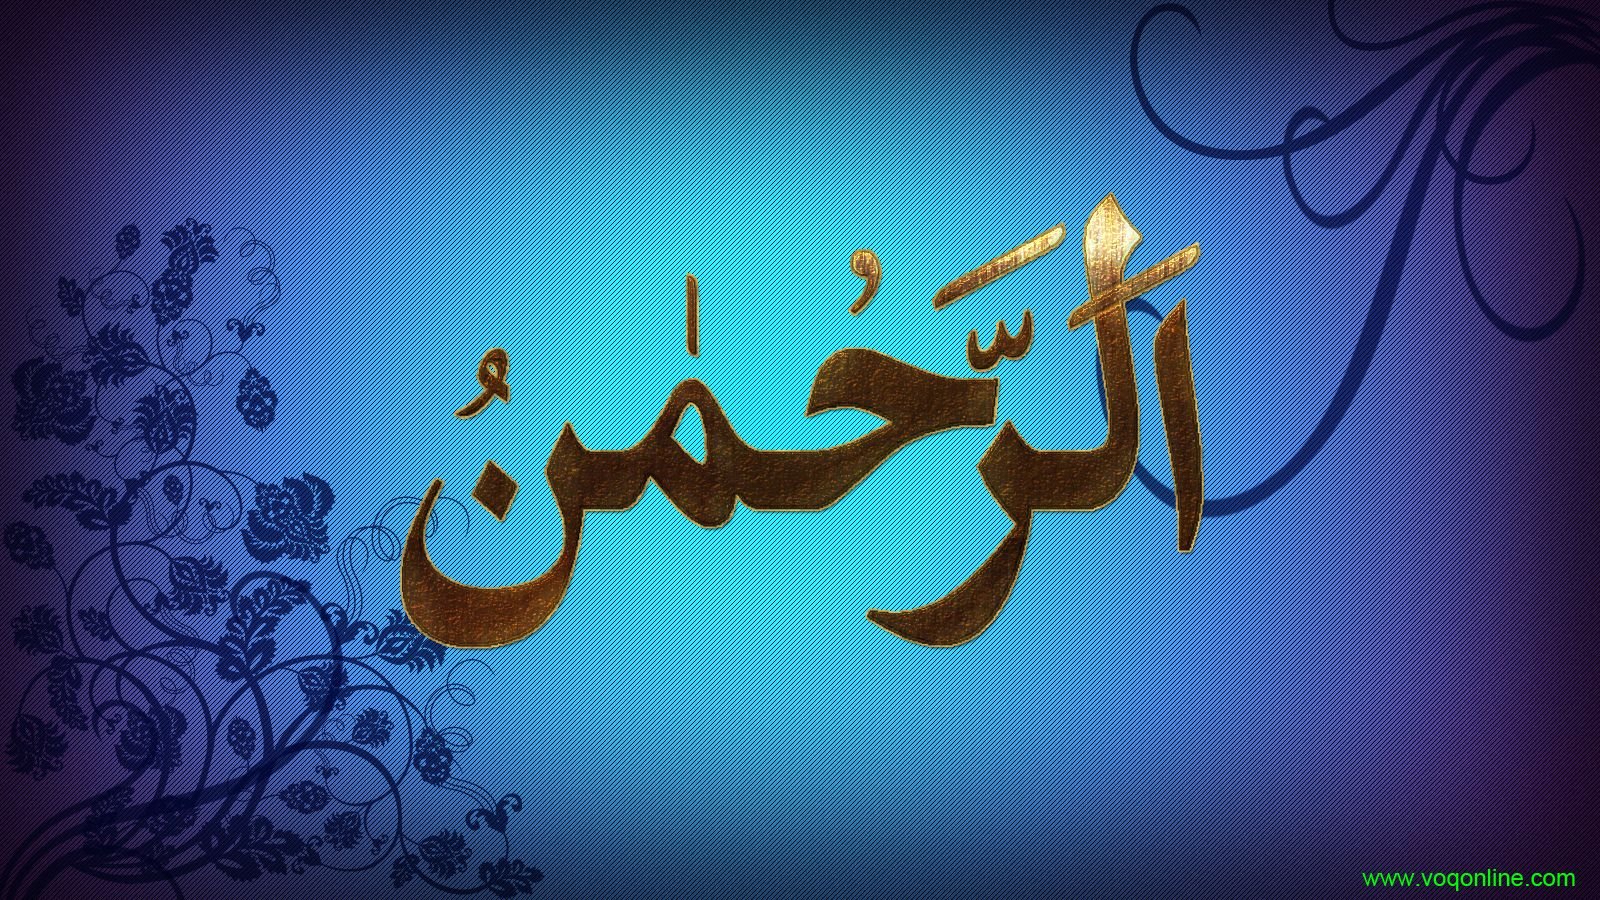 Благо на арабском. Исламские картинки. Пожелания на арабском. Красивые арабские картины. Счастье на мусульманском языке.